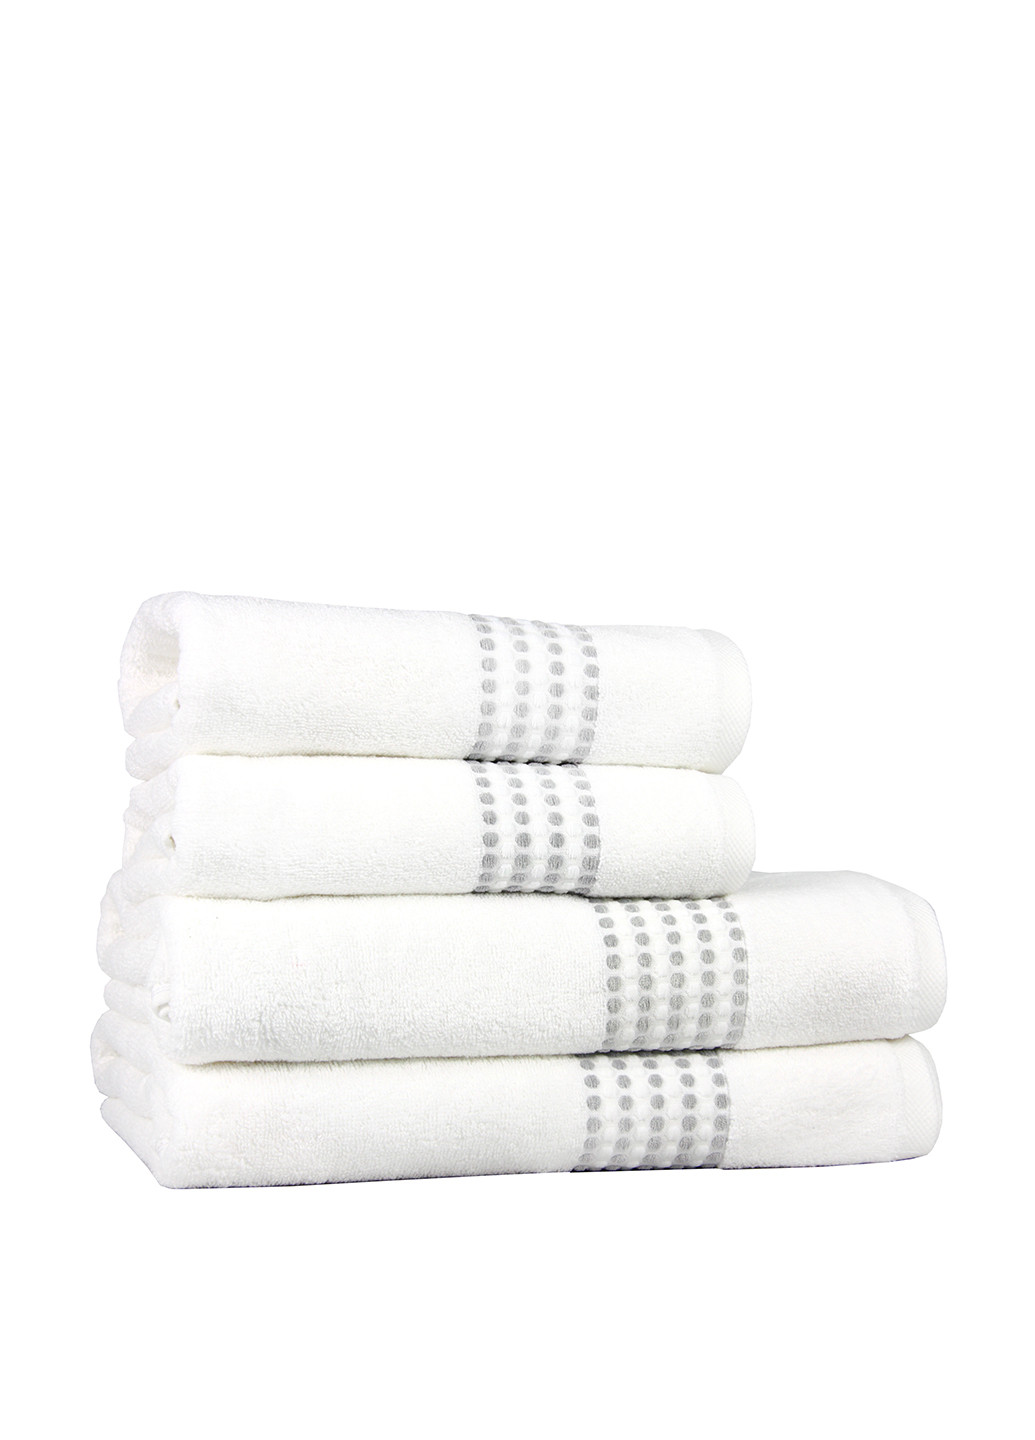 Maisonette полотенце (1 шт.), 50х100 см однотонный белый производство - Турция